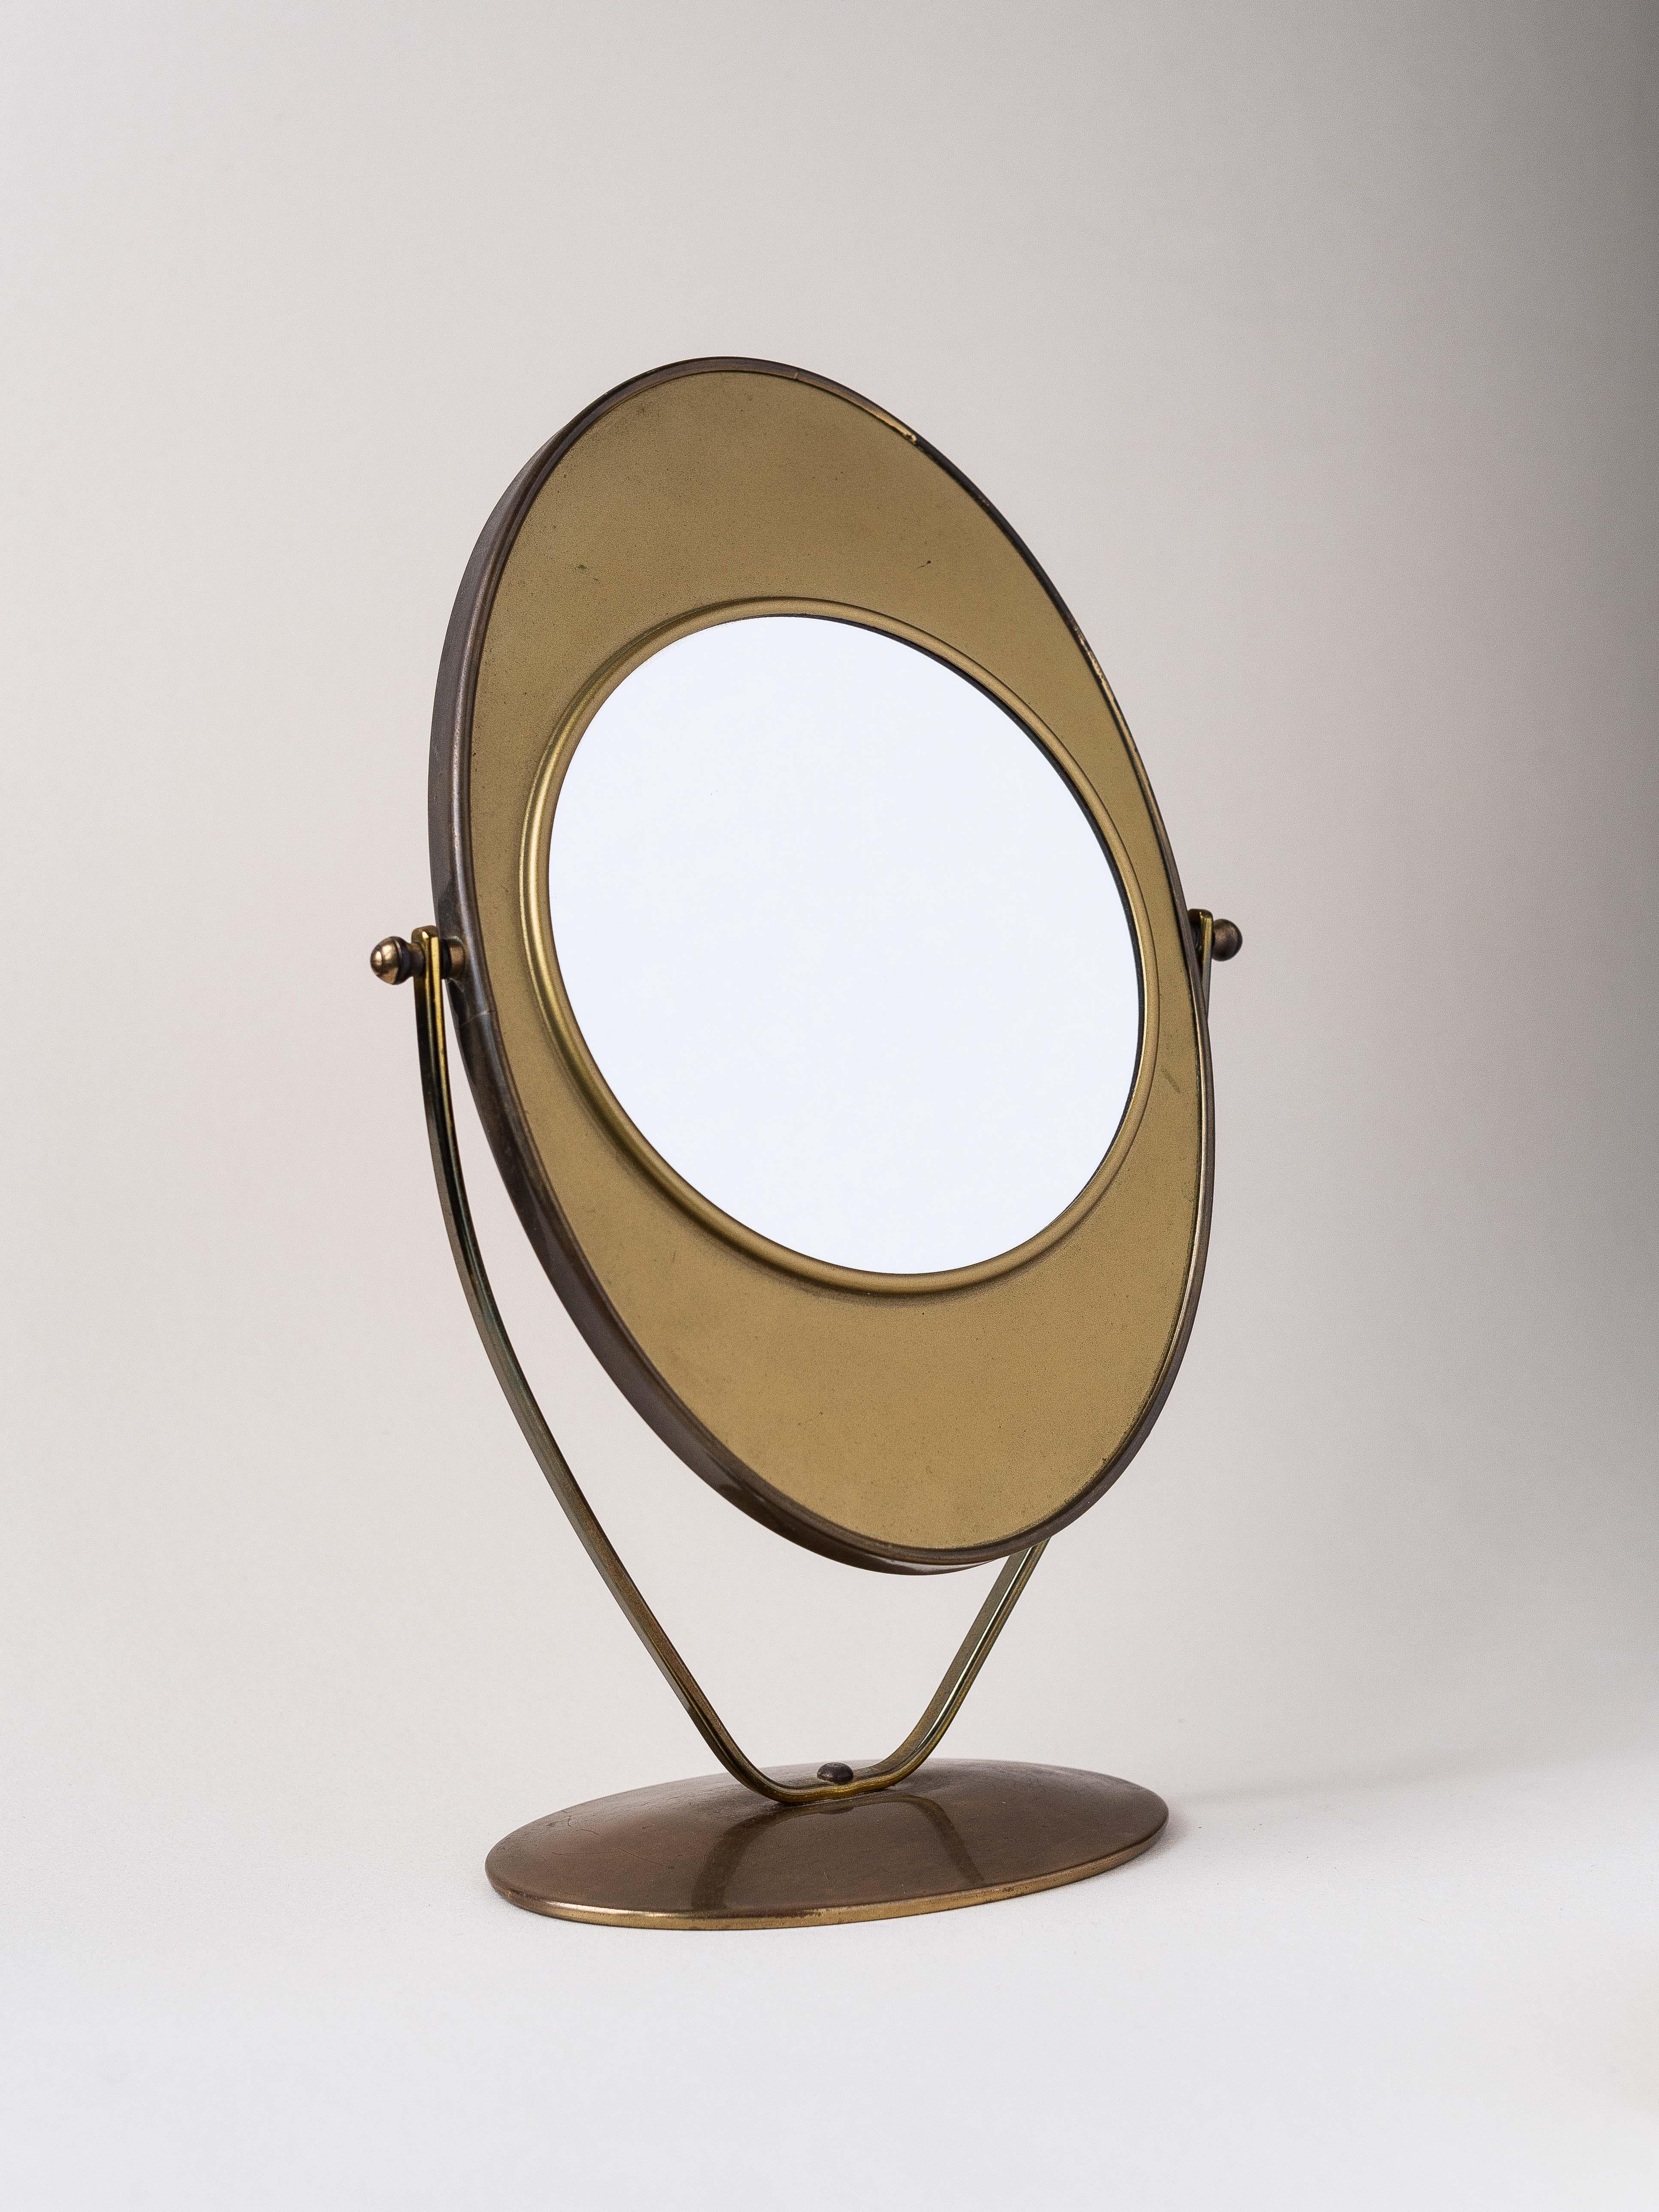 Elegant miroir de table double face, Circa 1960.

Entièrement en laiton patiné, forme générale dans le style de Charles Hollis Jones.

Le miroir peut être retourné pour être utilisé des deux côtés.

Un côté est un grand miroir classique, l'autre